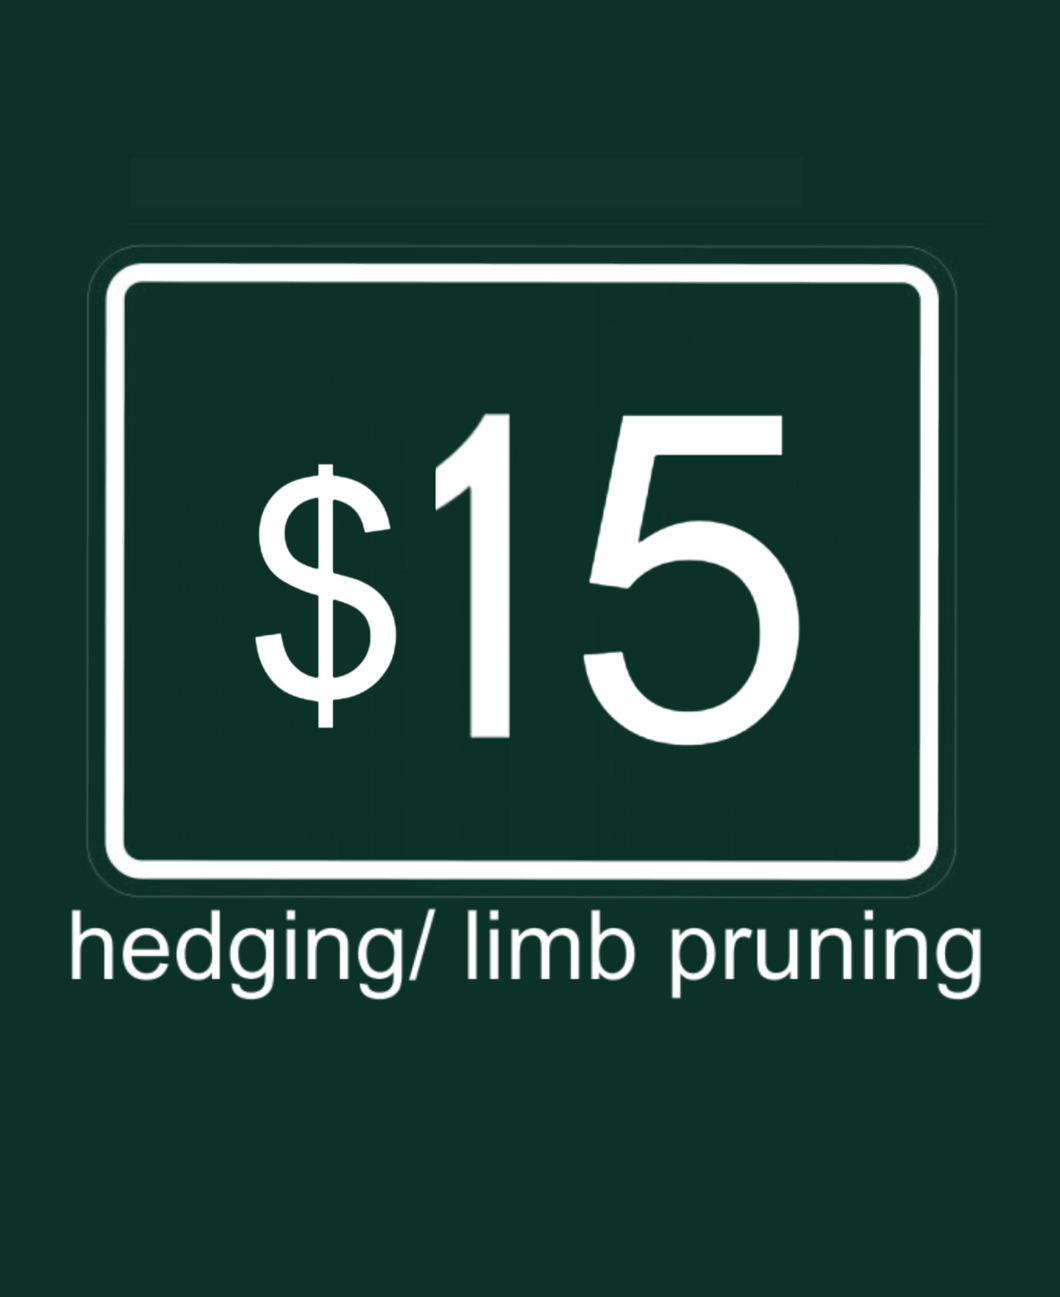 Hedging/ limb pruning